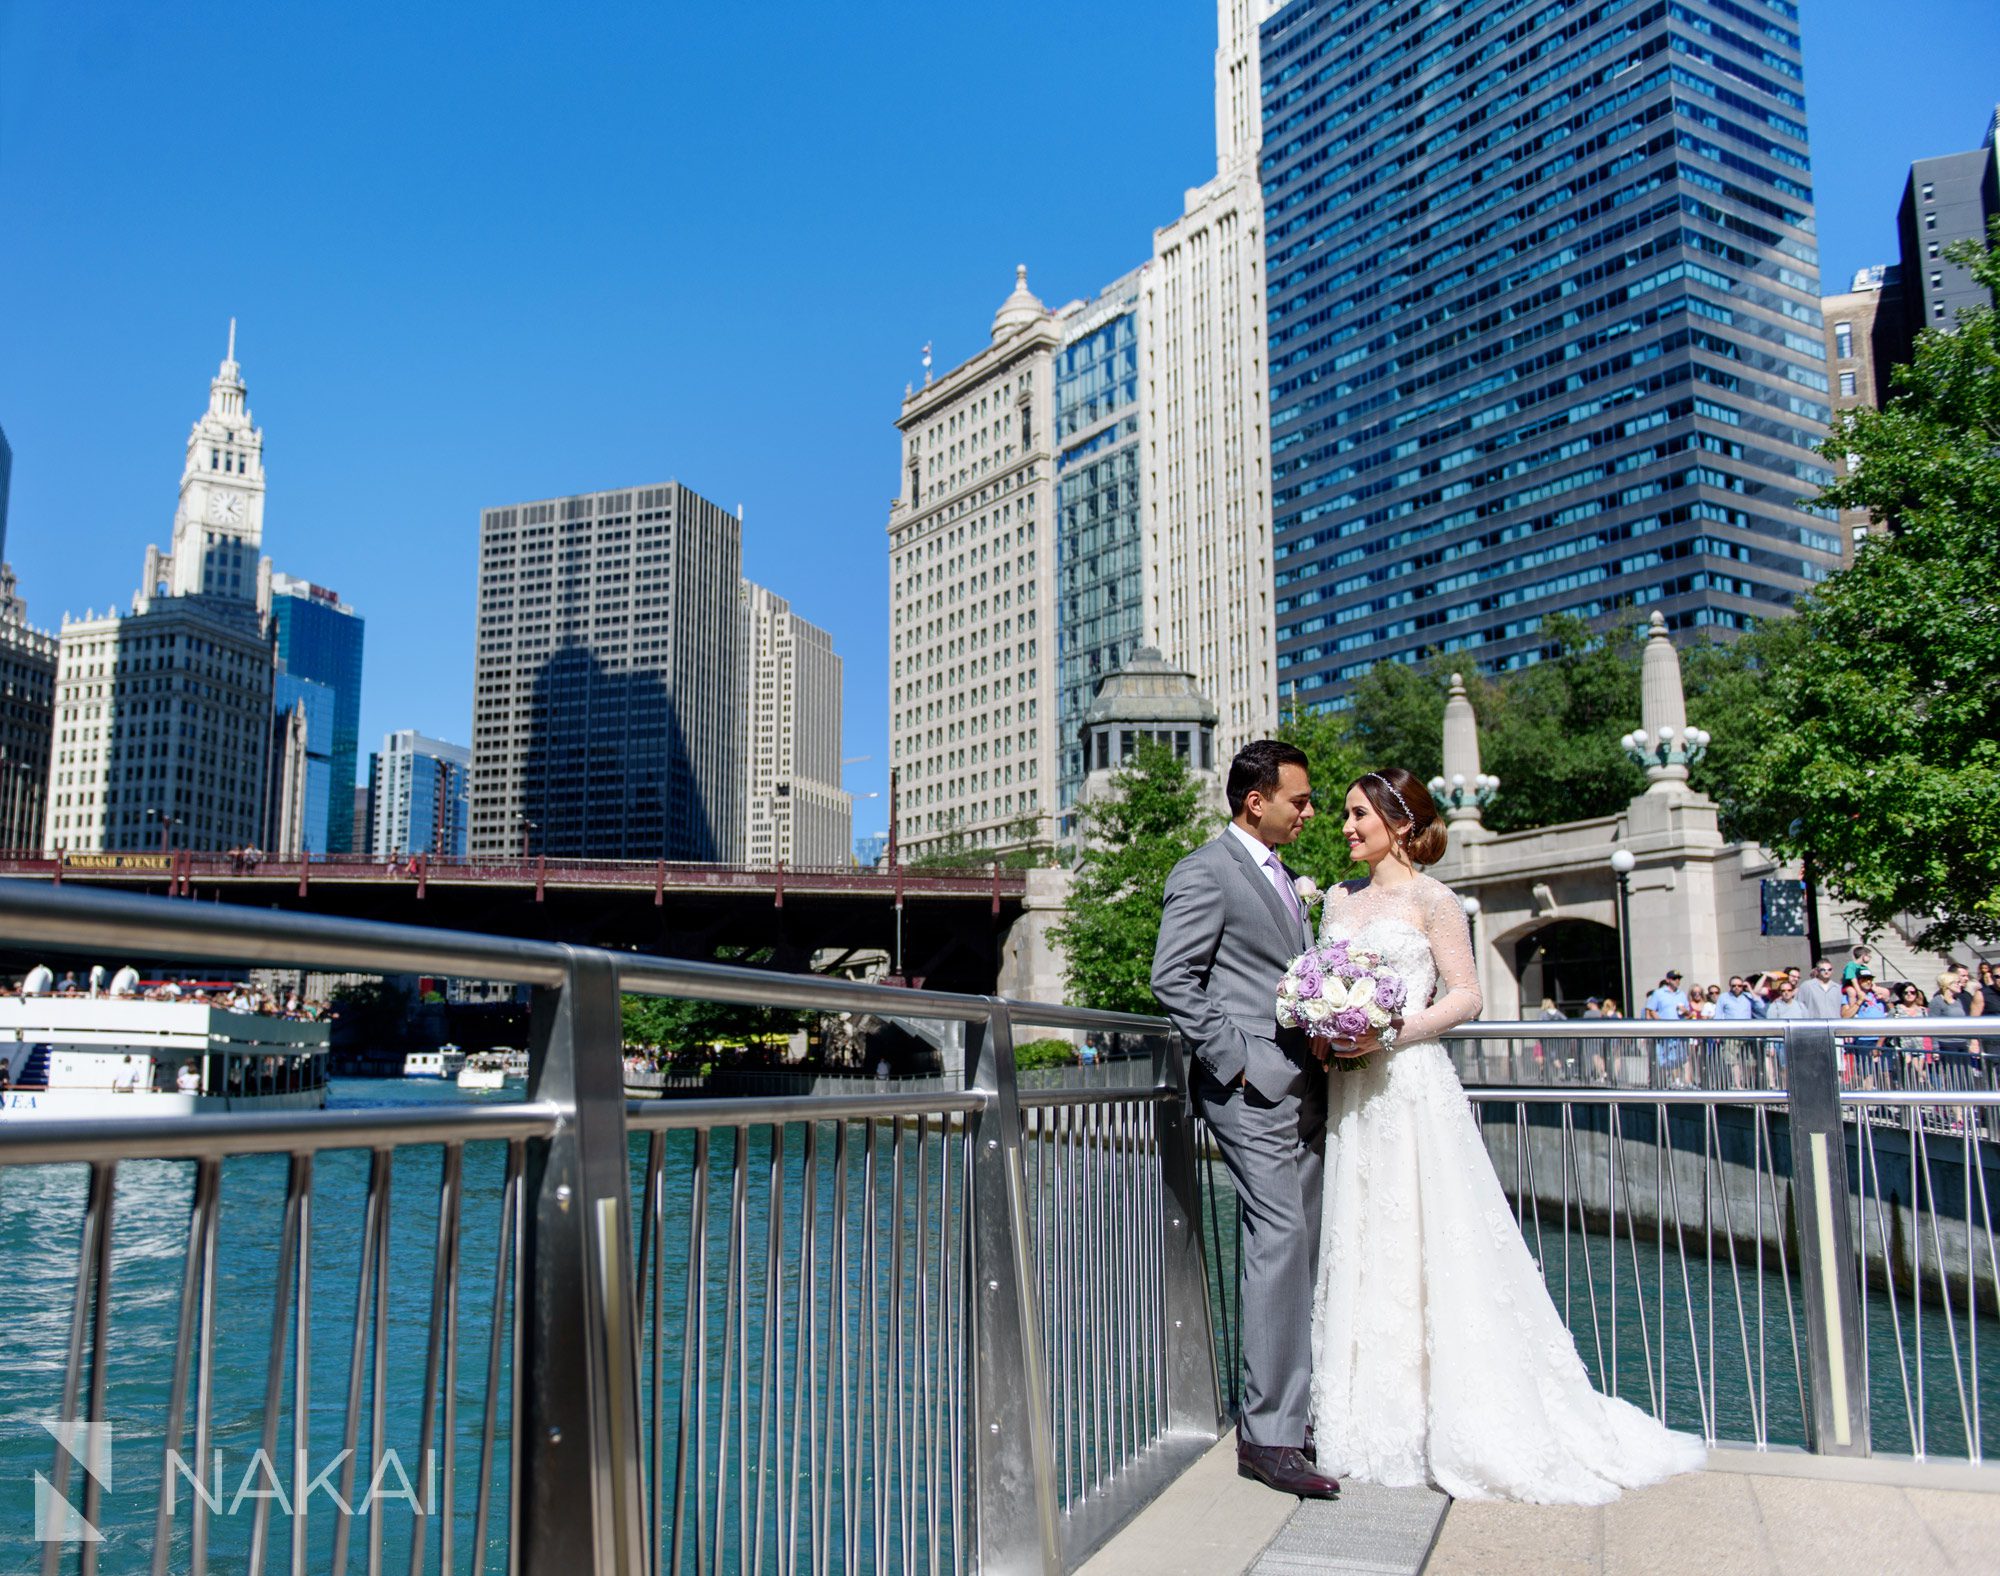 Chicago riverwalk wedding pictures 